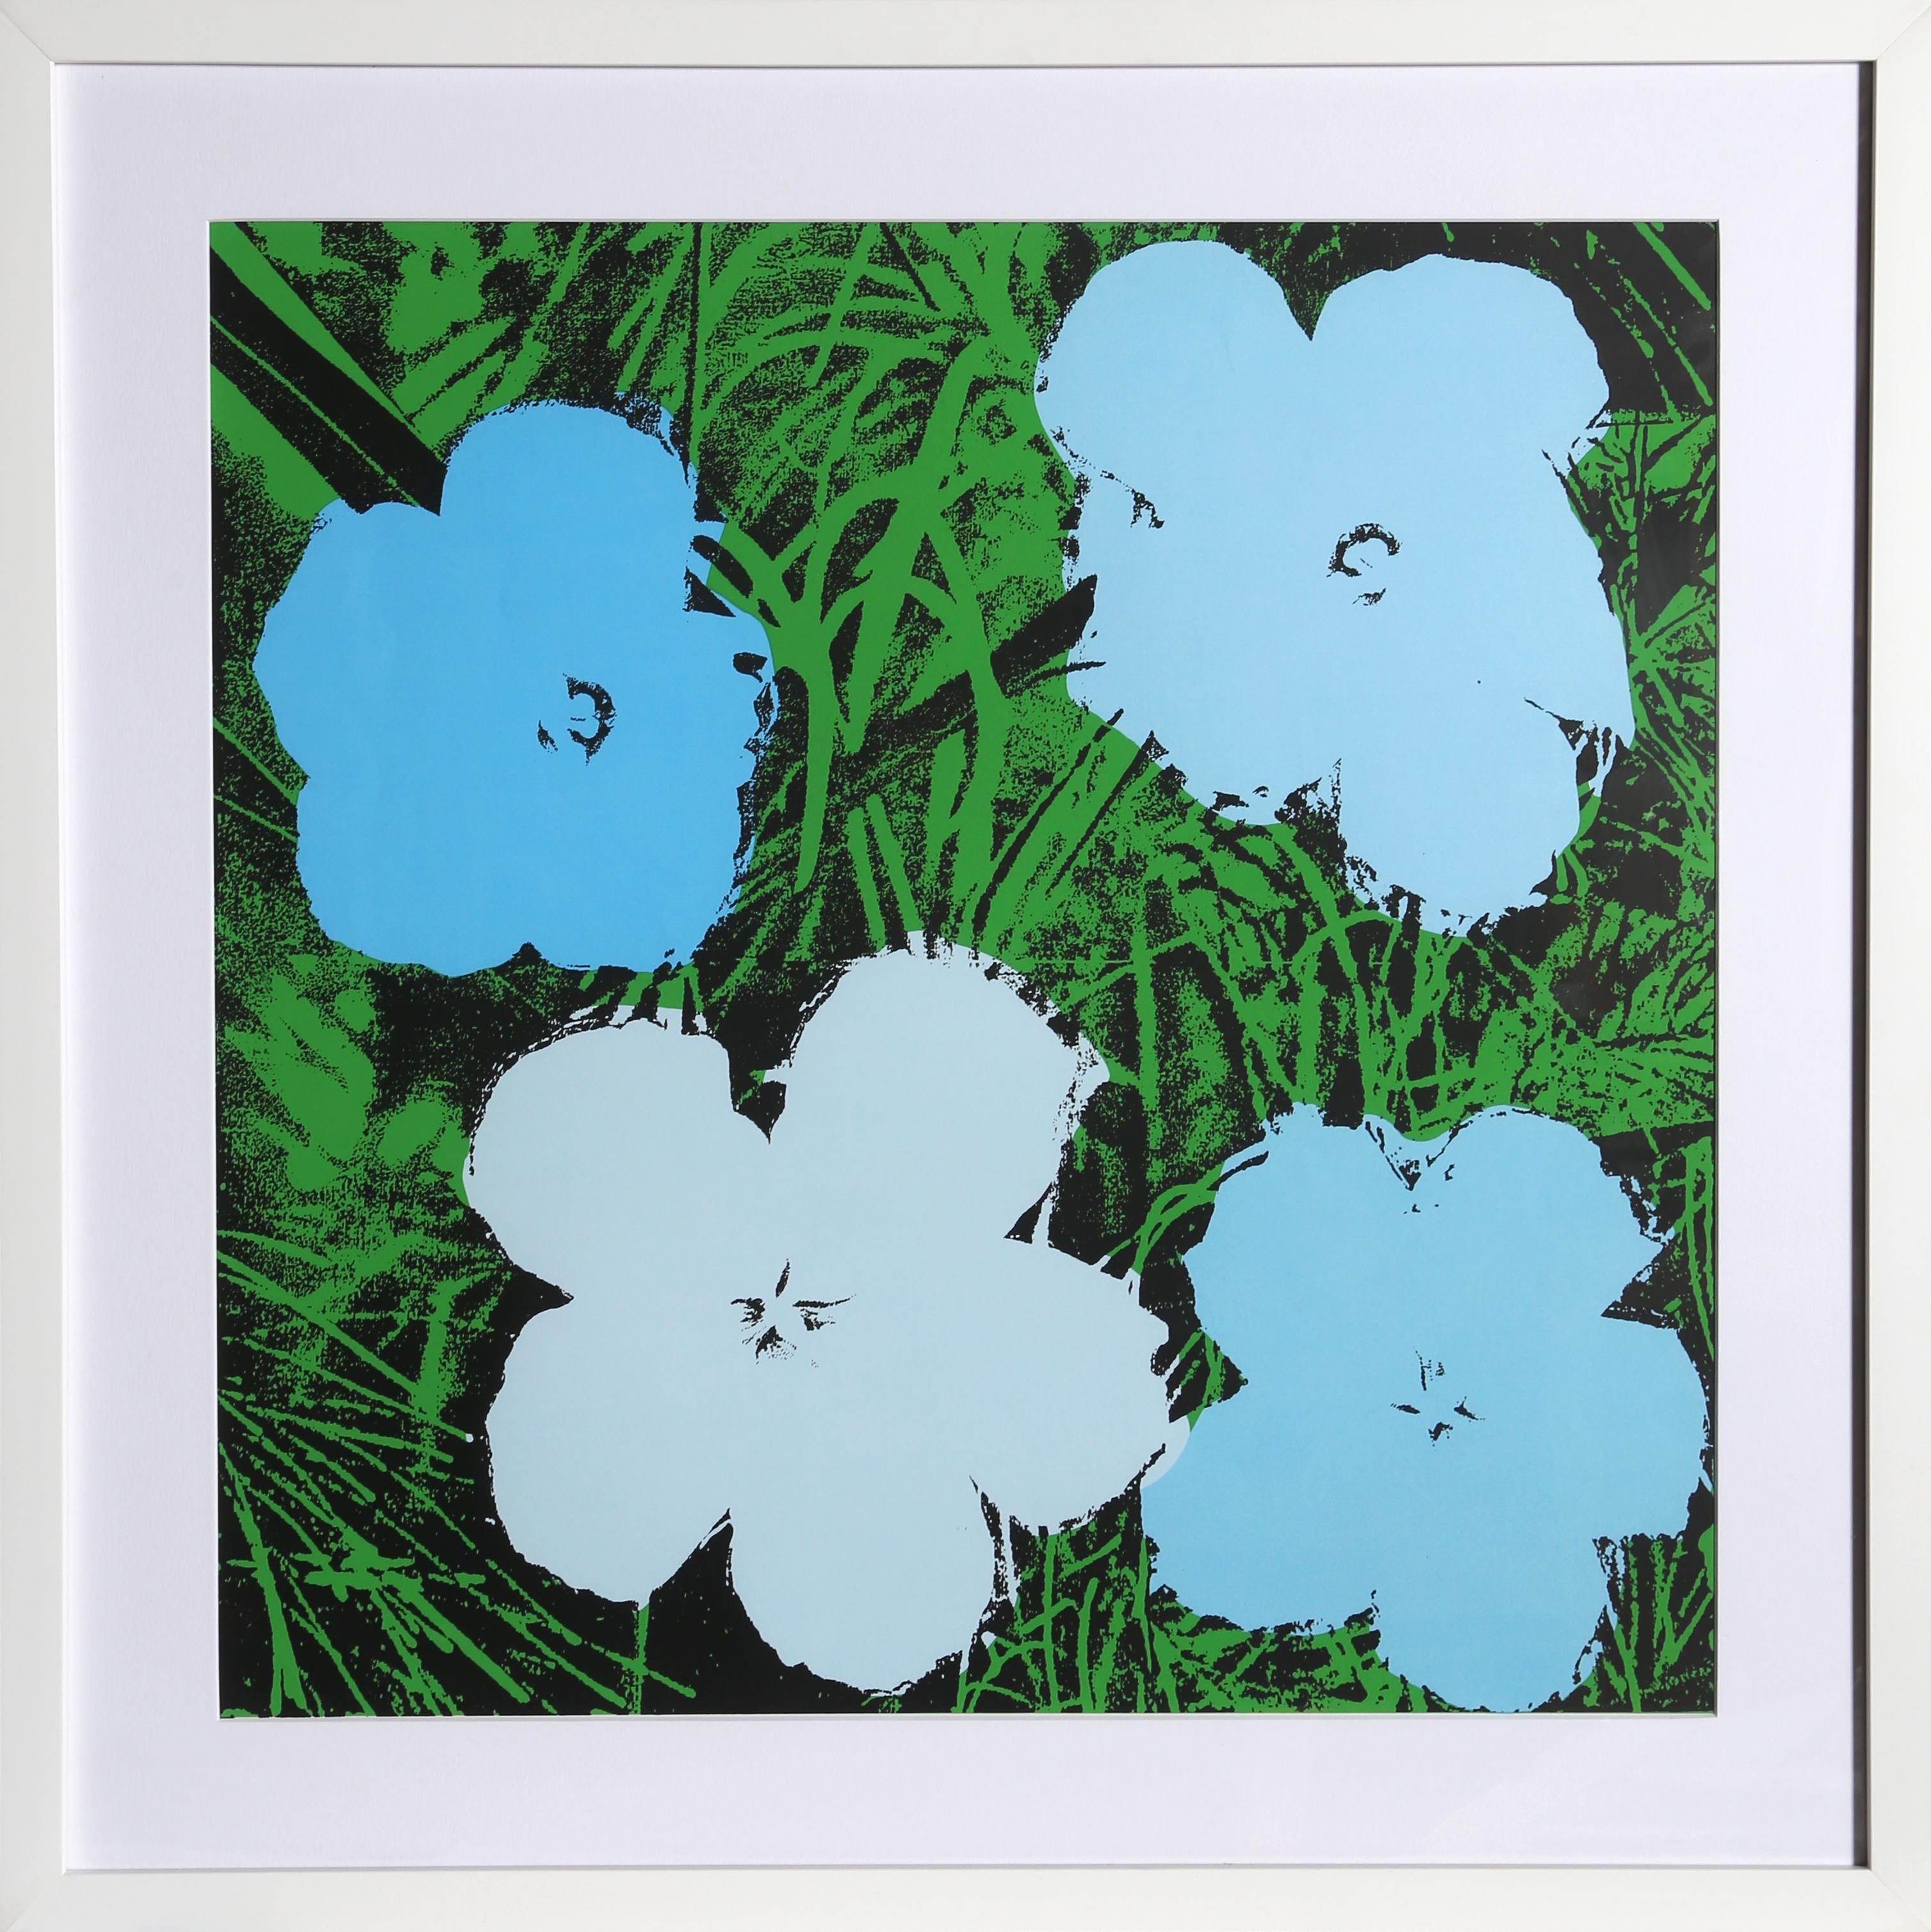 Dieses Siebdruckposter von Andy Warhol zeigt das ikonische Motiv der vier Blumen, das er regelmäßig für eine Vielzahl von Drucken und Gemälden verwendete. Diese vier Blumen erscheinen auf einem grünen Hintergrund und sind alle in verschiedenen